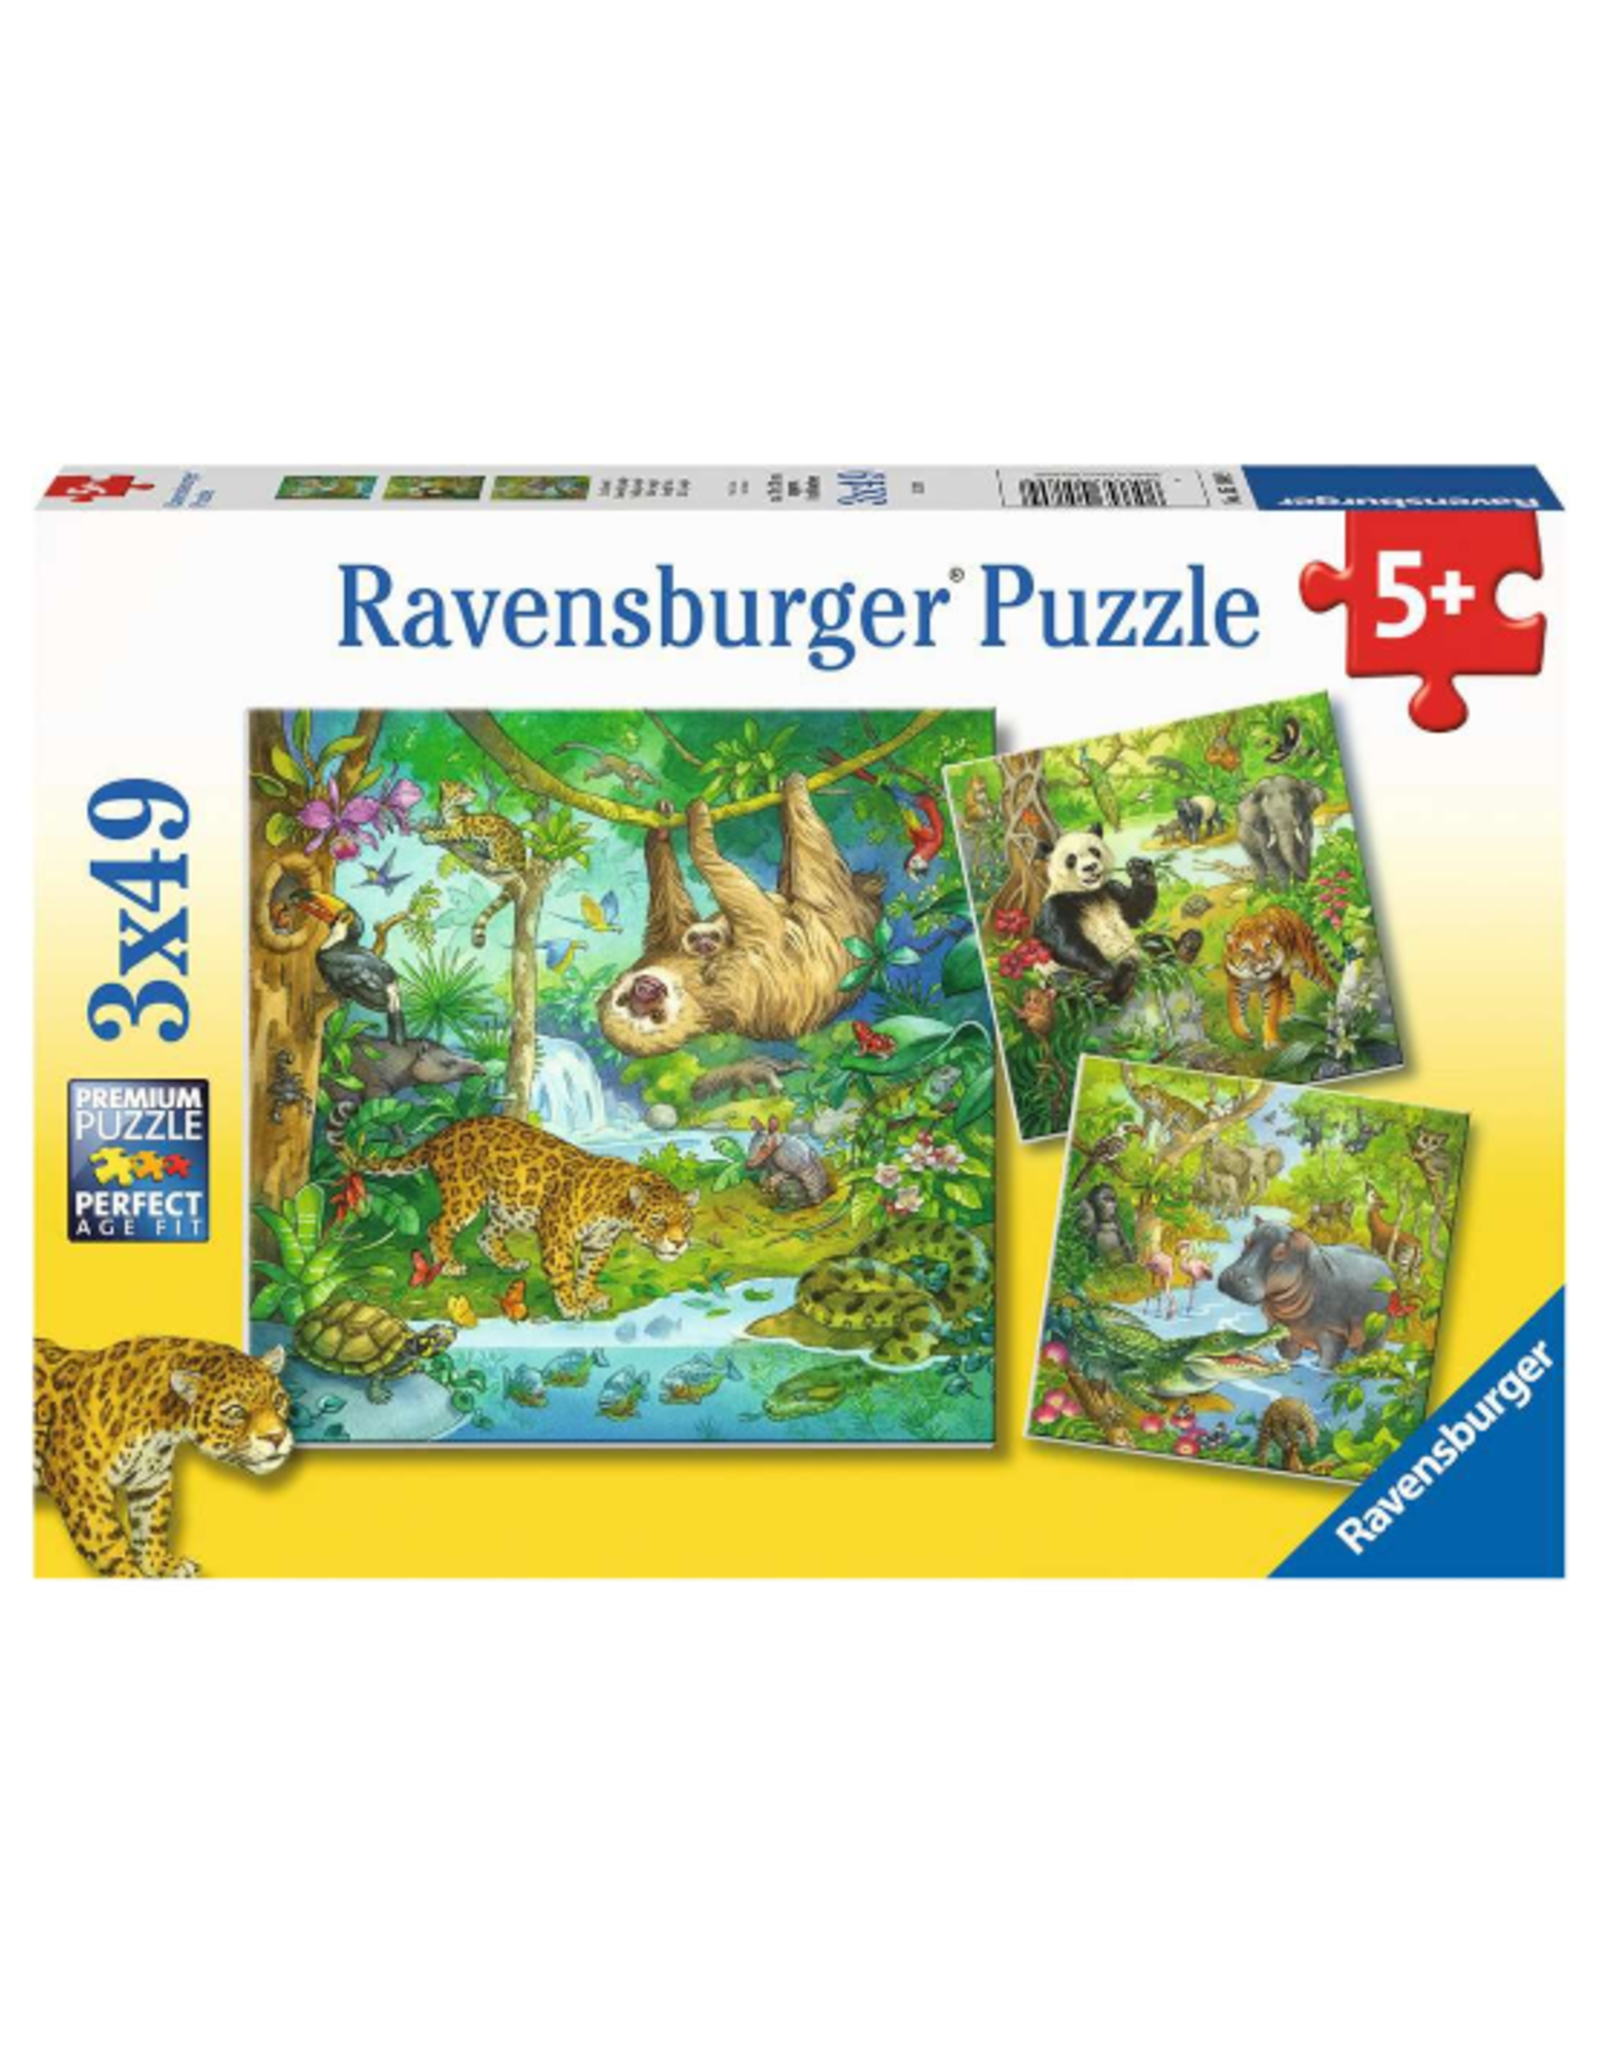 Ravensburger Ravensburger - 5+ - 3 x 49pcs - Jungle Fun